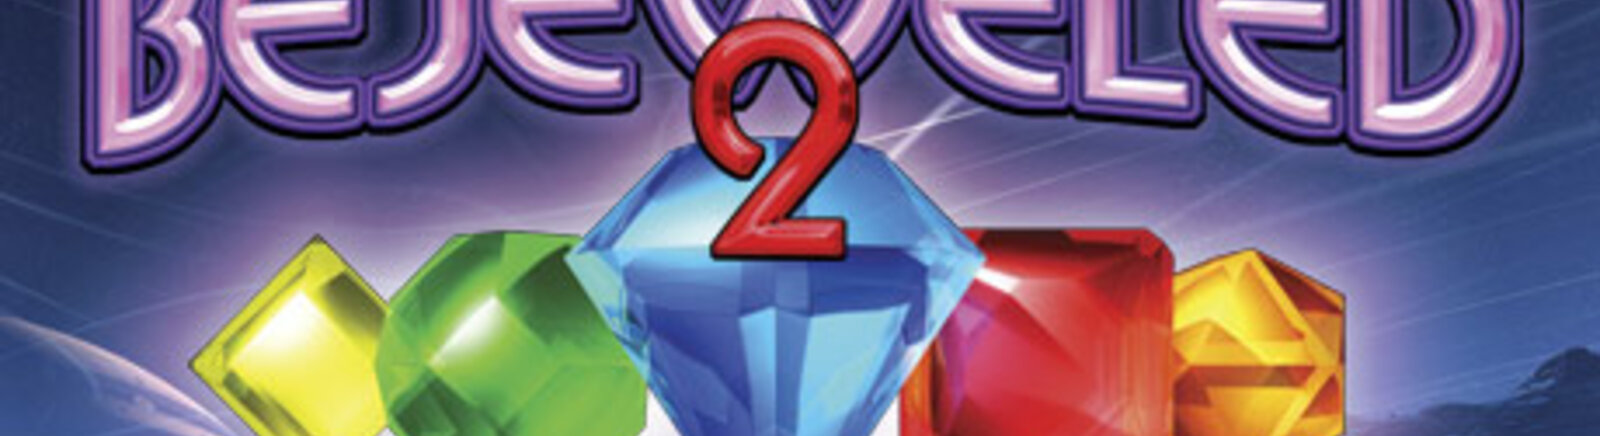 Дата выхода Bejeweled 2  на PC, iOS и Android в России и во всем мире